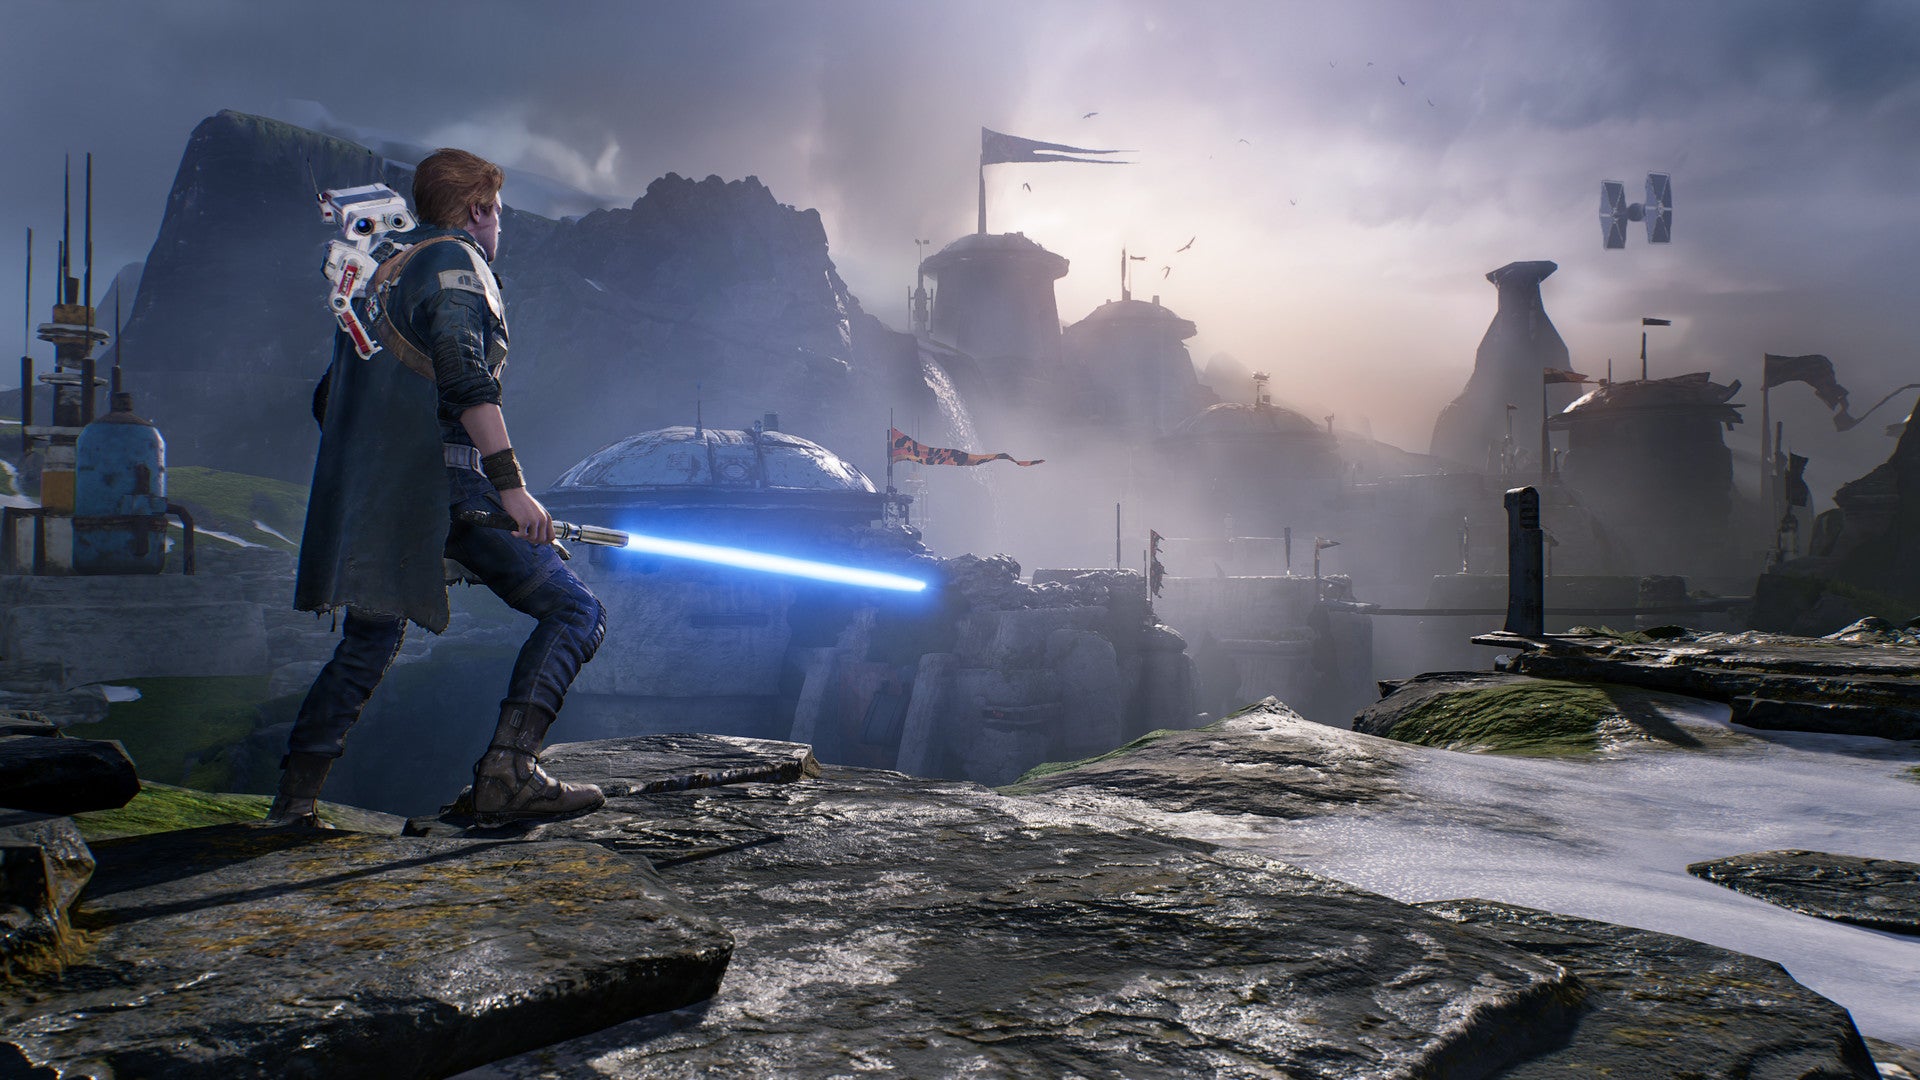 STAR WARS Jedi: La Orden  caída™ Edición Deluxe Cuenta Compartida Xbox One Xbox Series